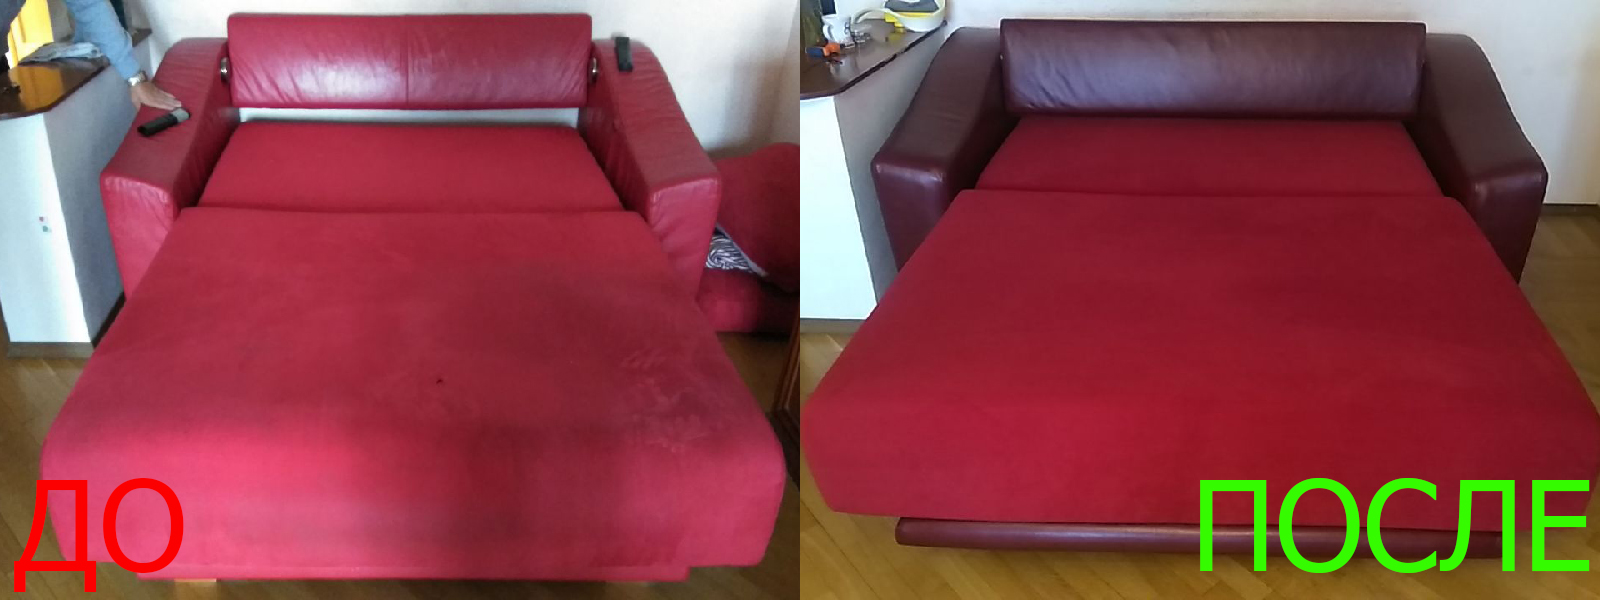 Ремонт механизма дивана в Краснодаре разумные цены на услуги, опытные специалисты